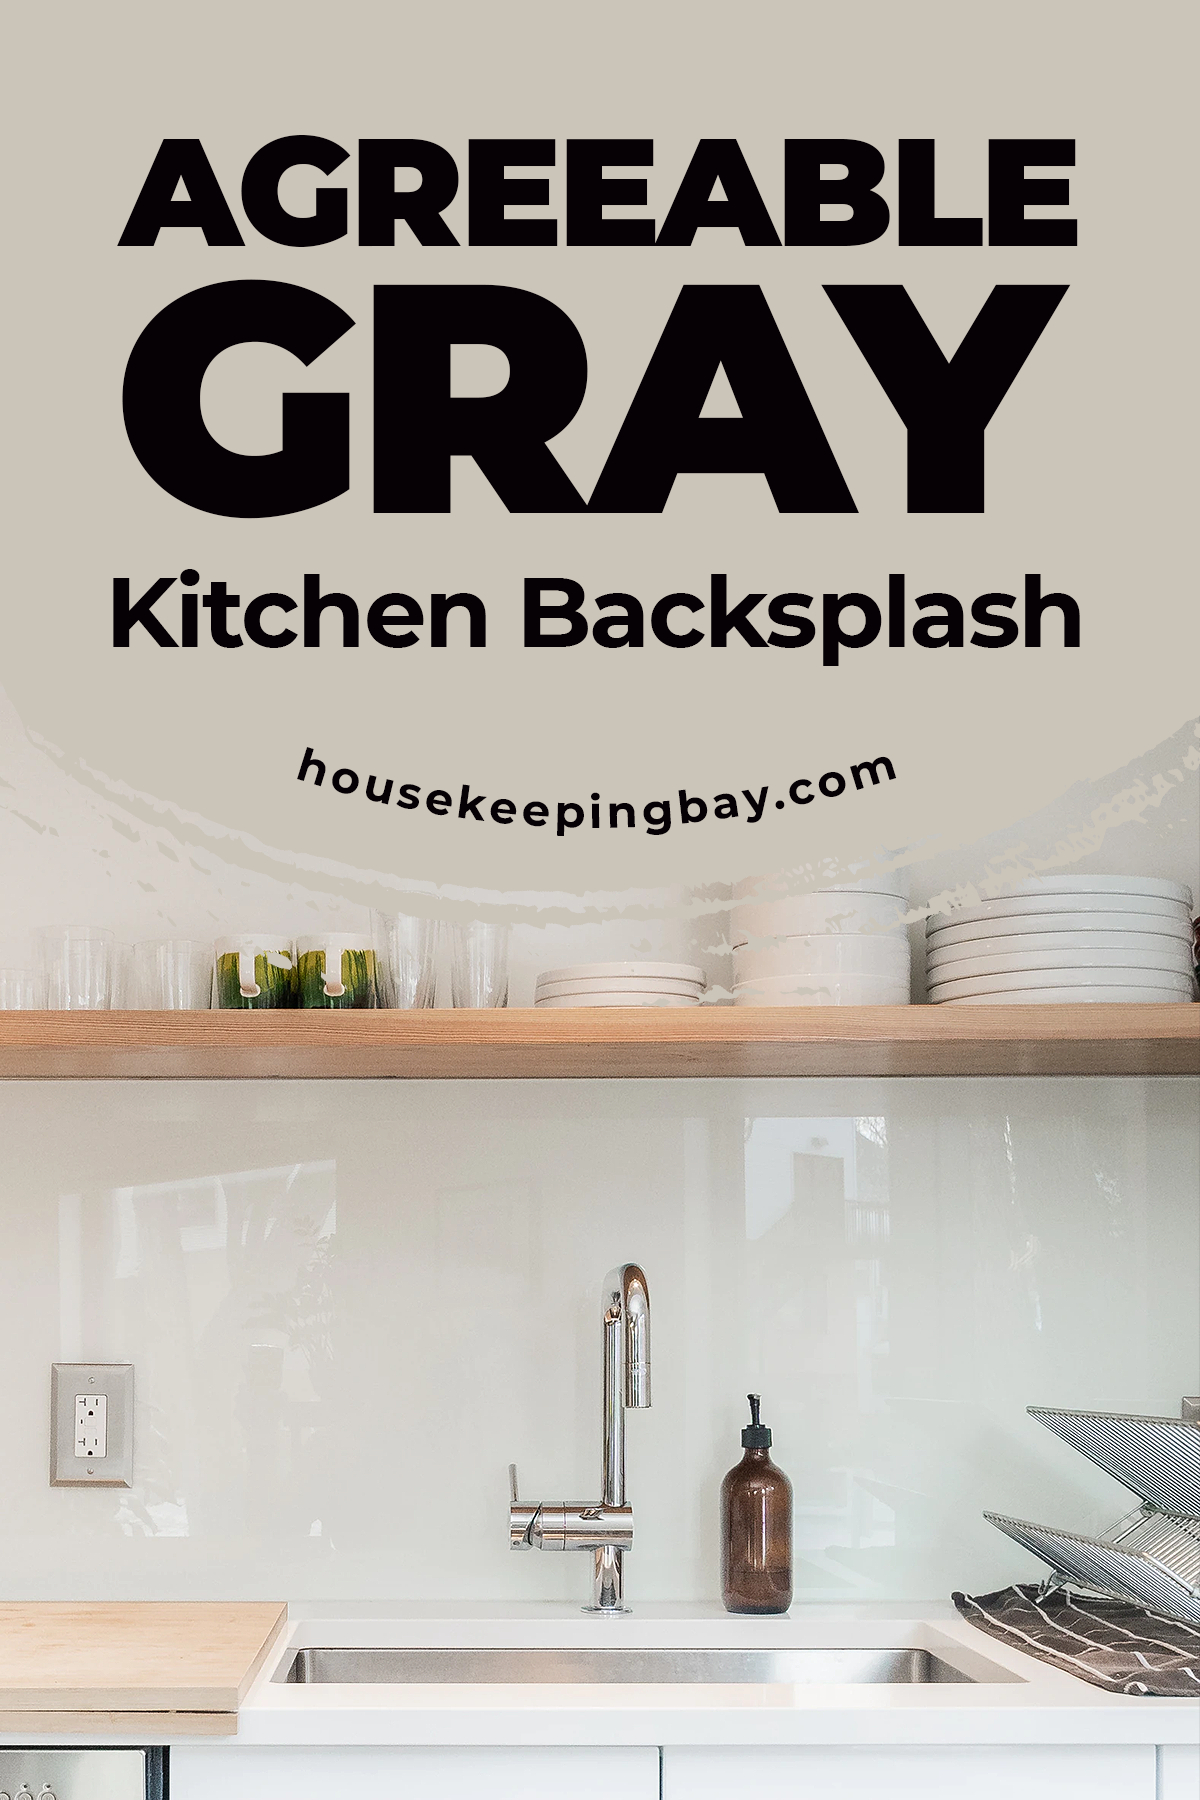 Agreeable gray kitchen backsplash